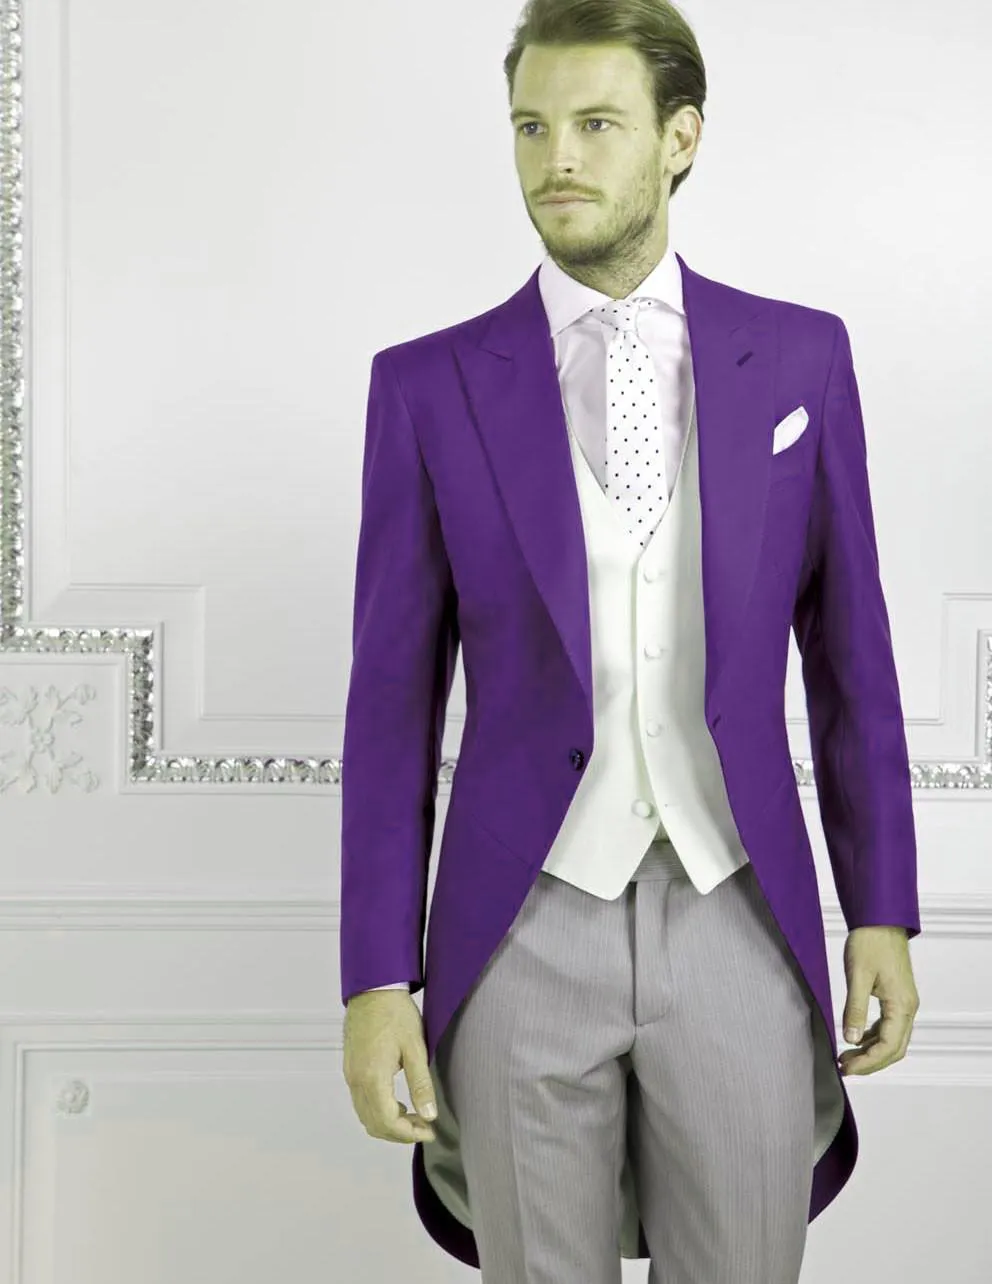 ファッションスタイルパープルテールコート男性の結婚式タキシード優秀な新郎Tuxedos男性ディナープロム式儀式ドレス（ジャケット+パンツ+ネクタイ+ベスト）794